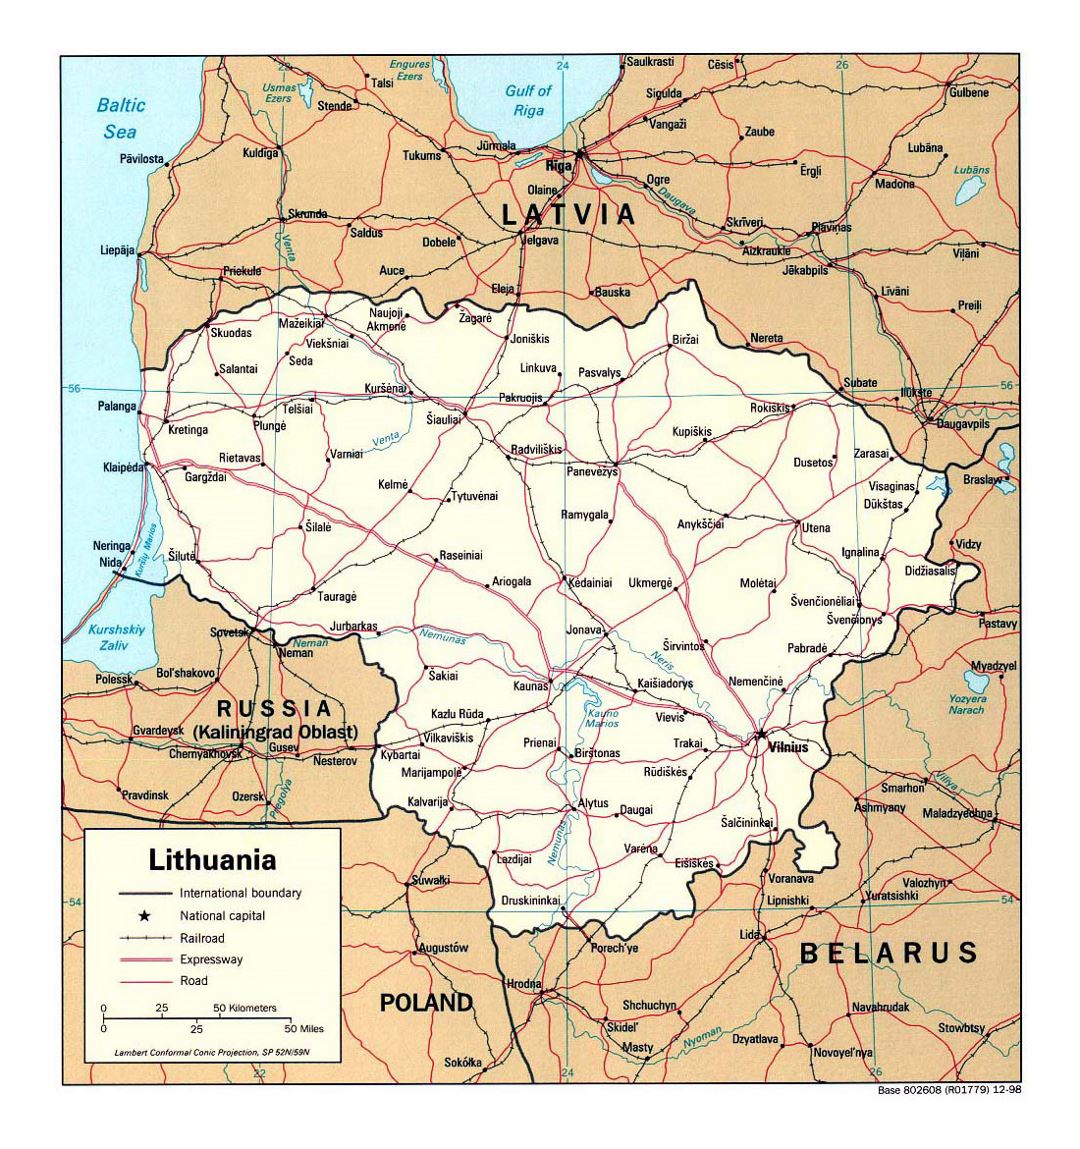 Detallado mapa político de Lituania con carreteras, ferrocarriles y principales ciudades - 1998